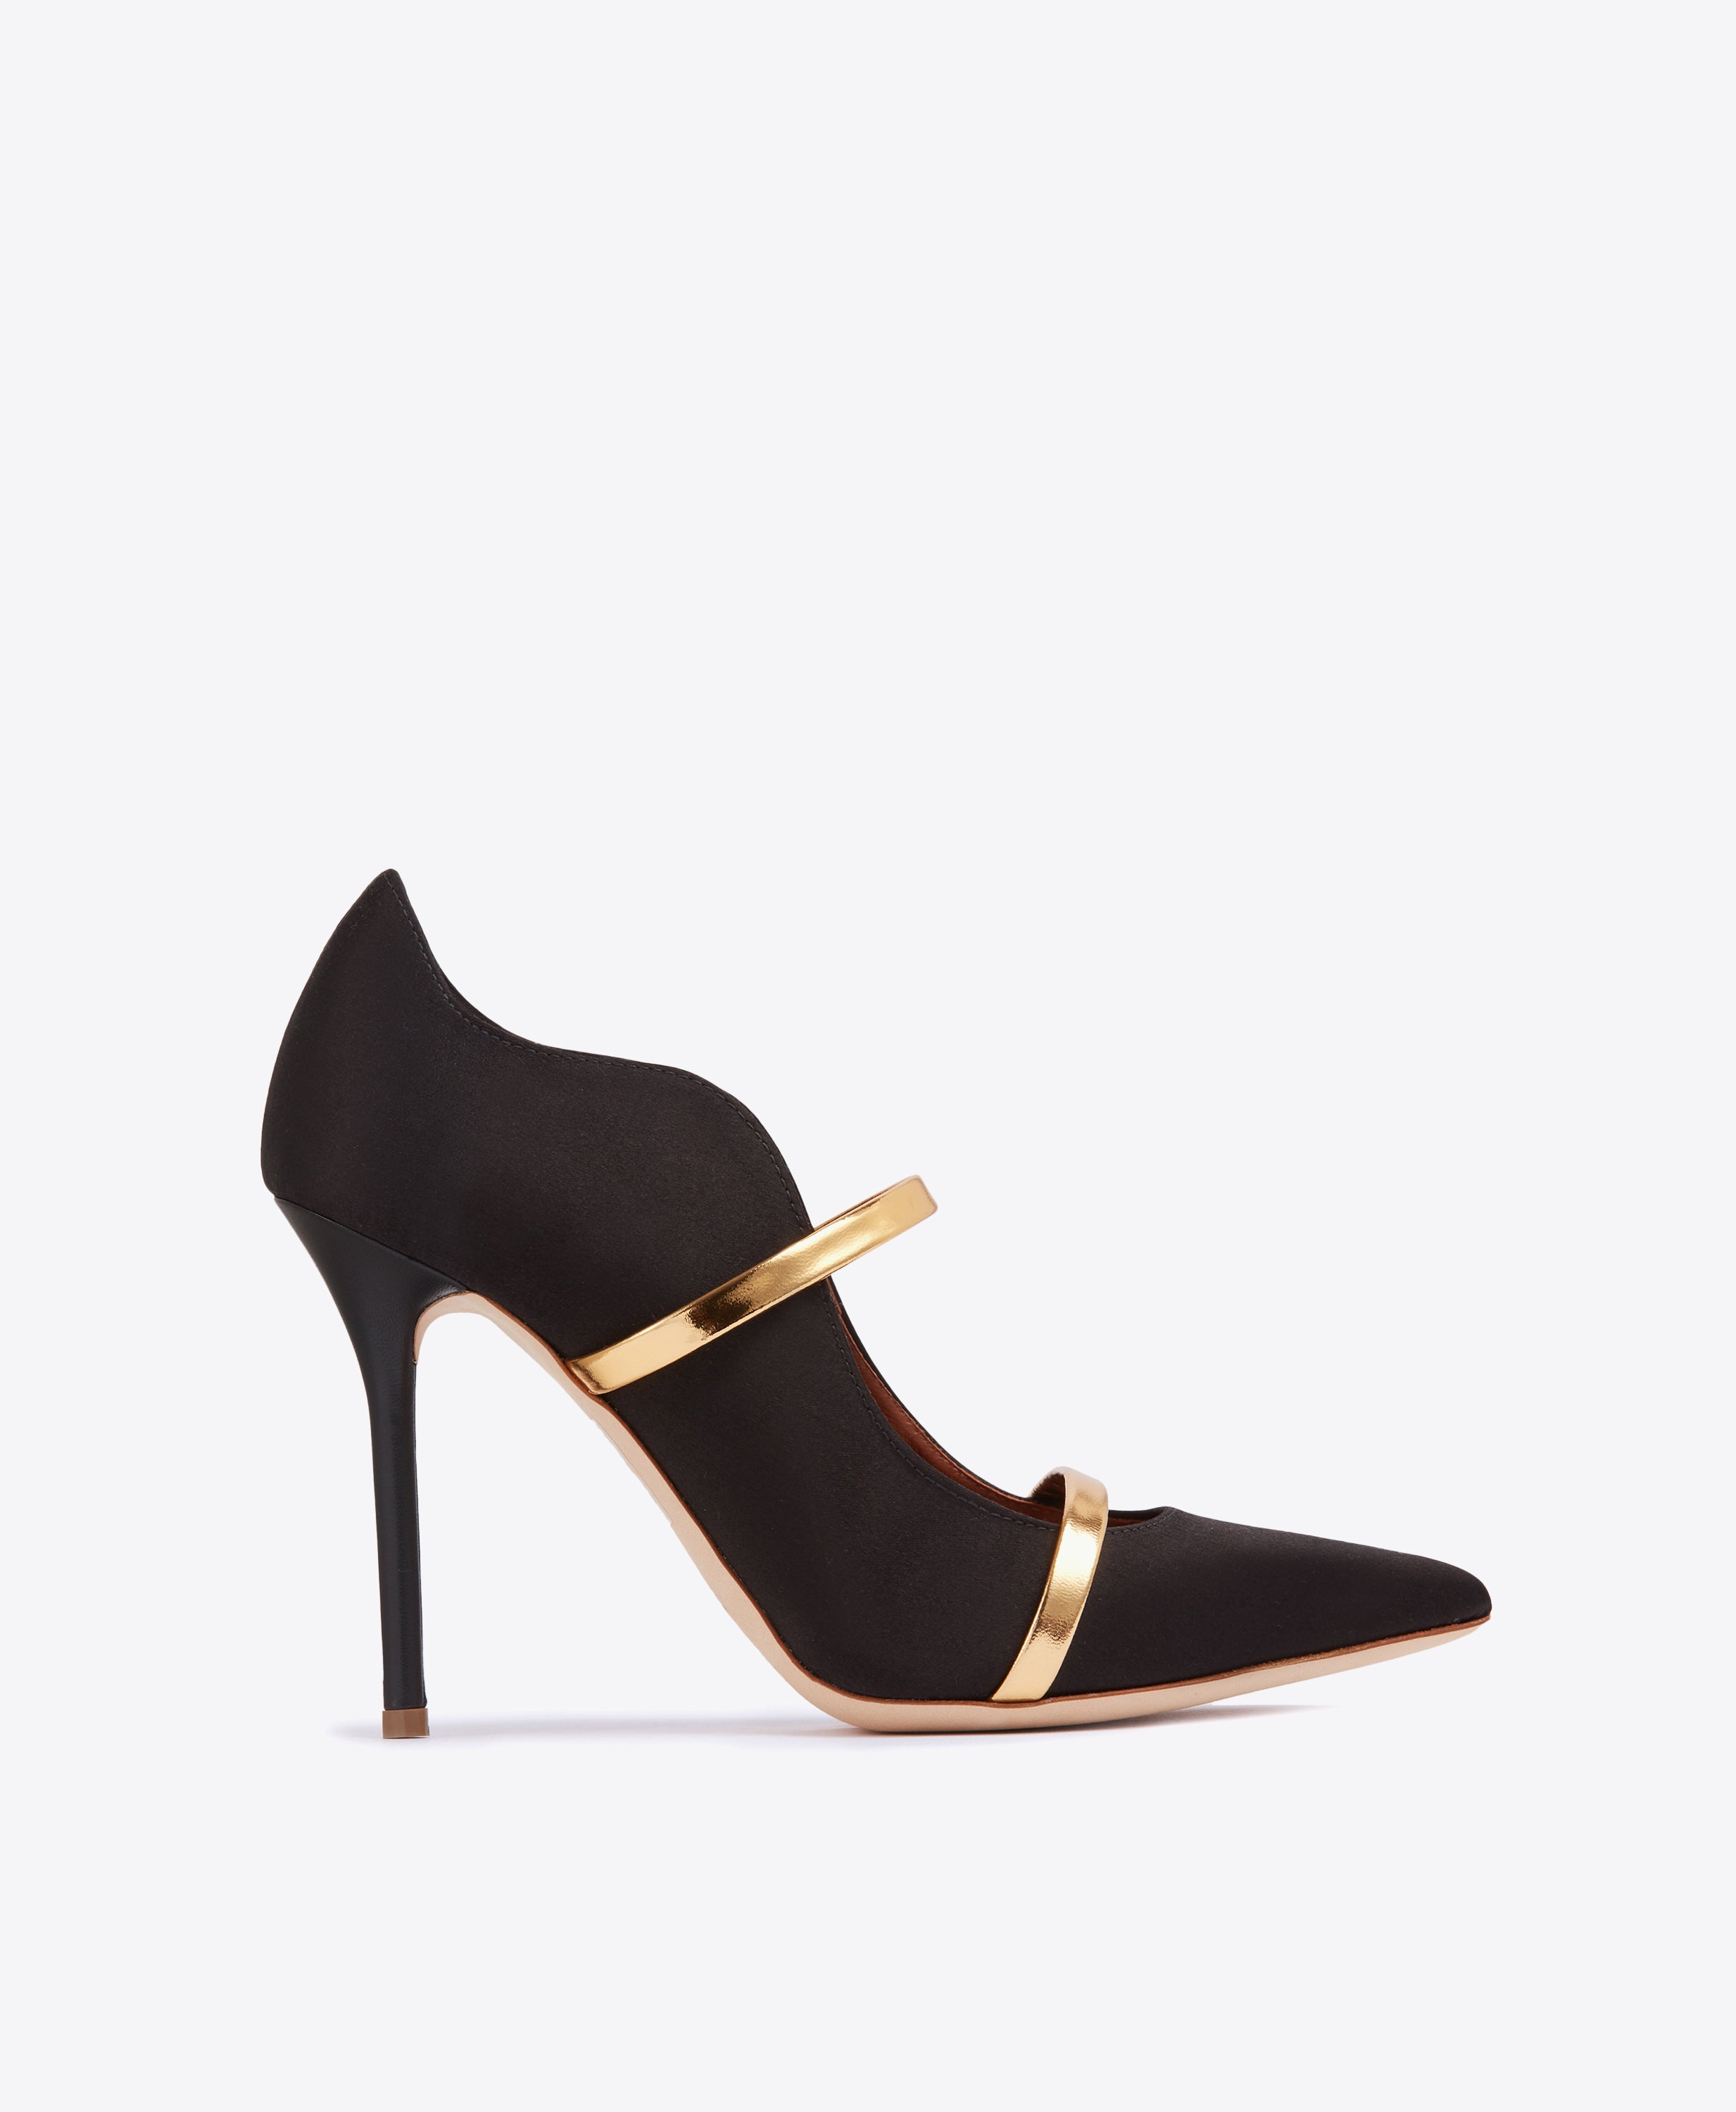 2021 wholesale dress pumps shoes ladies| Alibaba.com